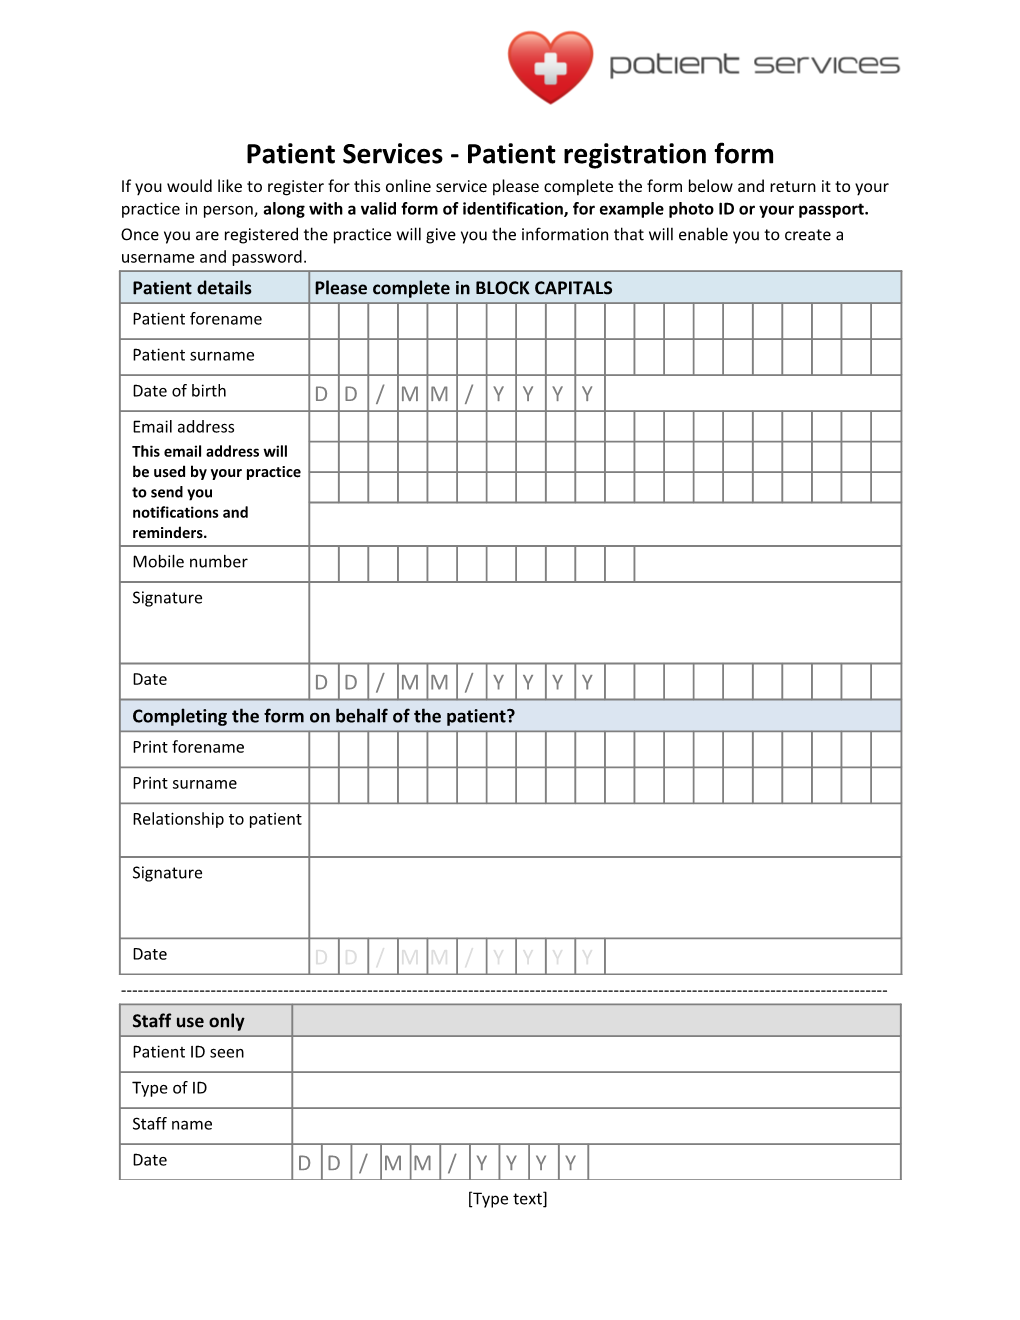 Patient Services - Patient Registration Form